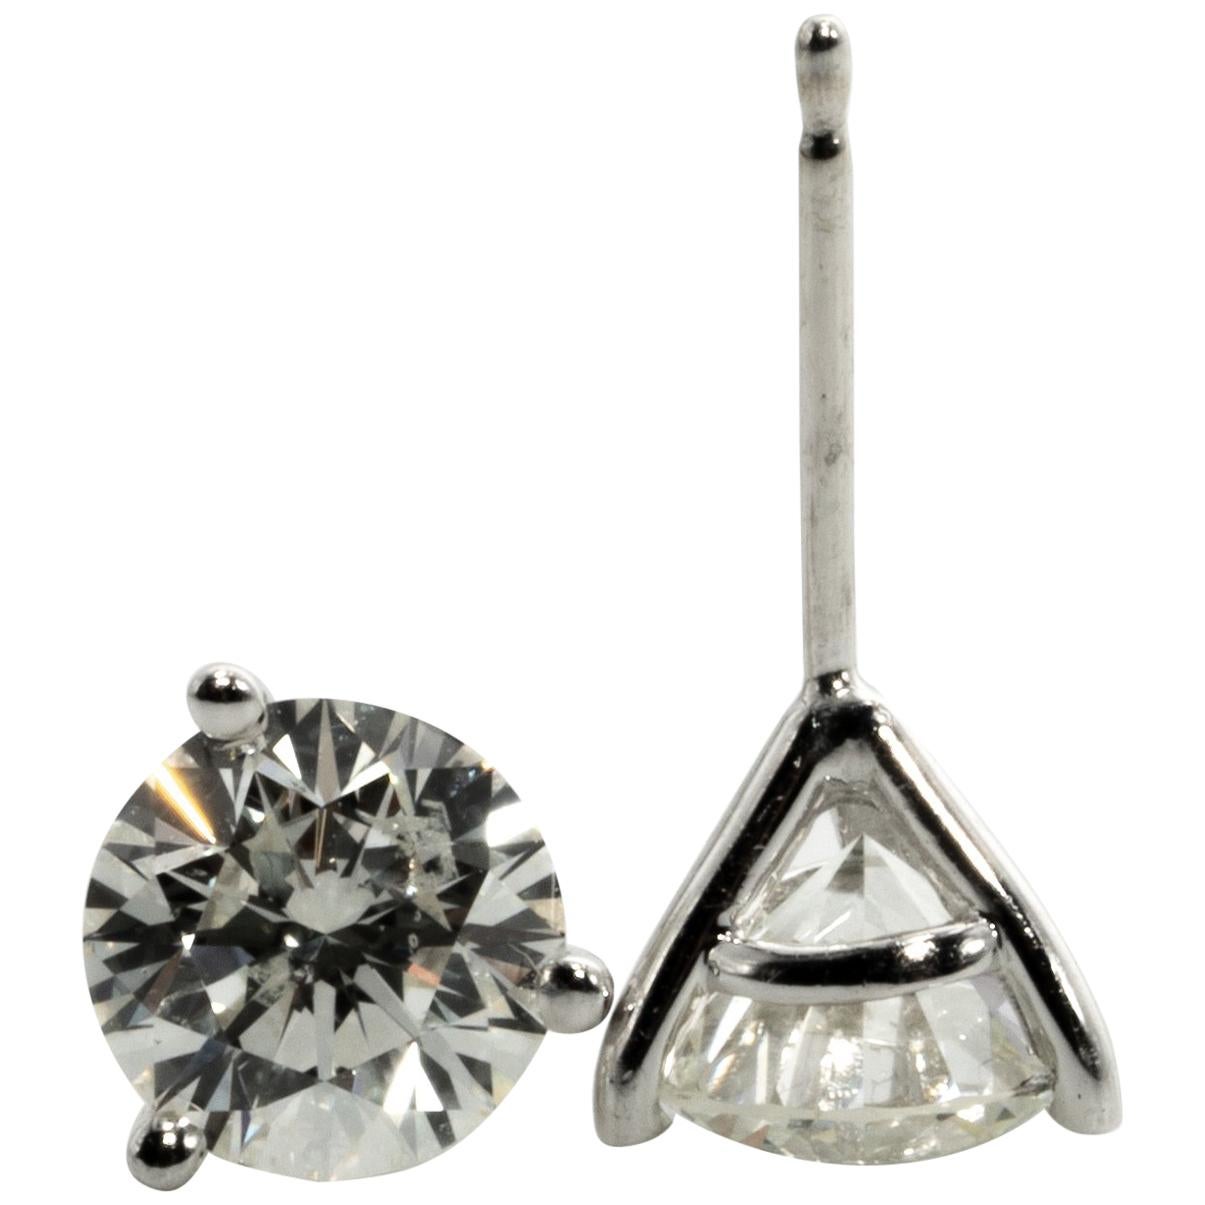 2.18 Carat Diamond Stud Earrings in 14K Martini Setting, by The Diamond Oak